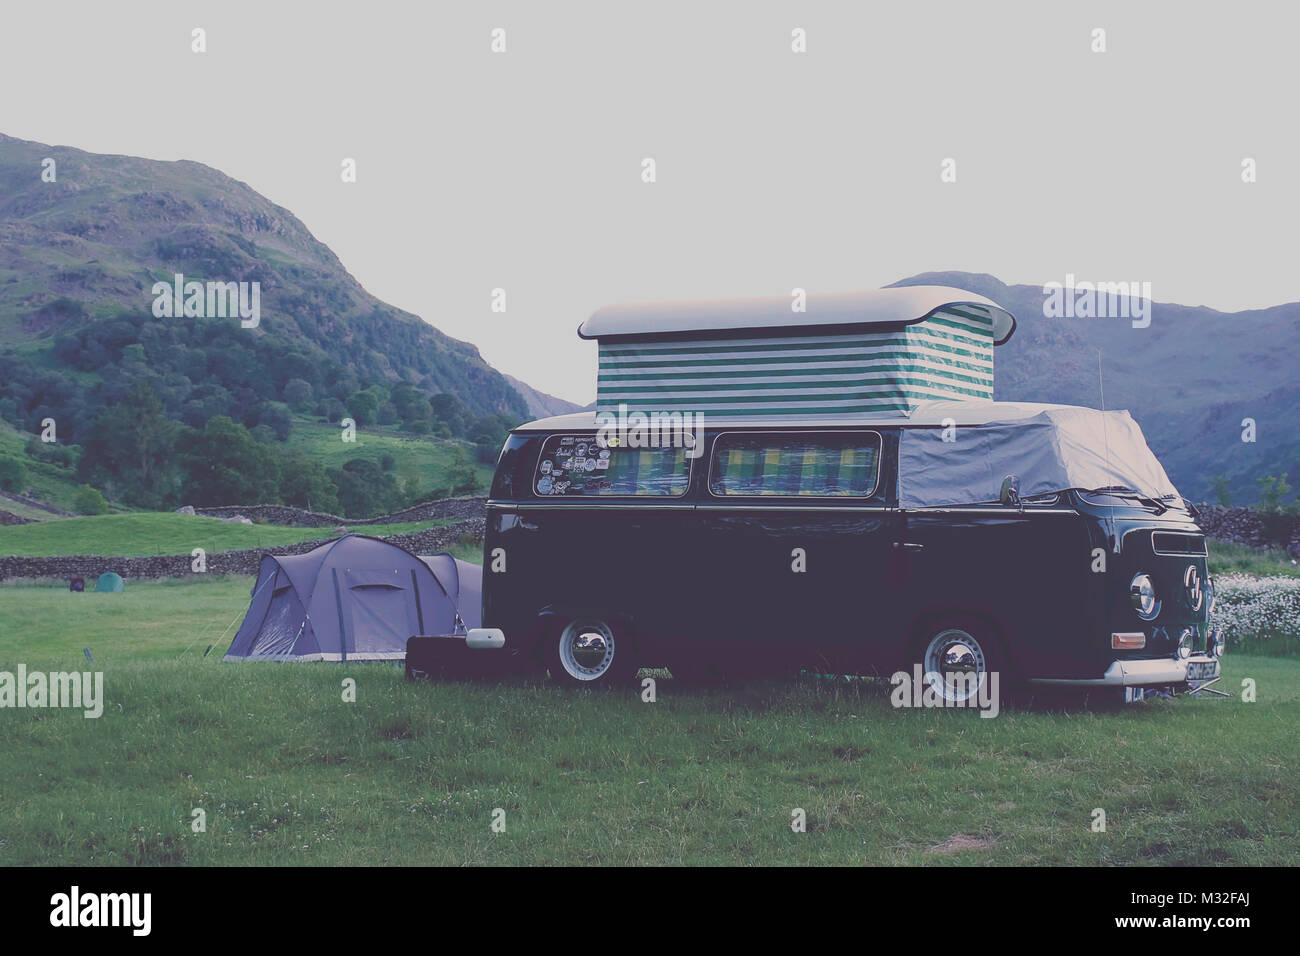 La vieja escuela,Volkswagen camper van a acampar en el Parque Nacional Lake District, Cumbria, Reino Unido.Tienda y paisaje de fondo.Camping Reino Unido,travel Uk.70's style. Foto de stock